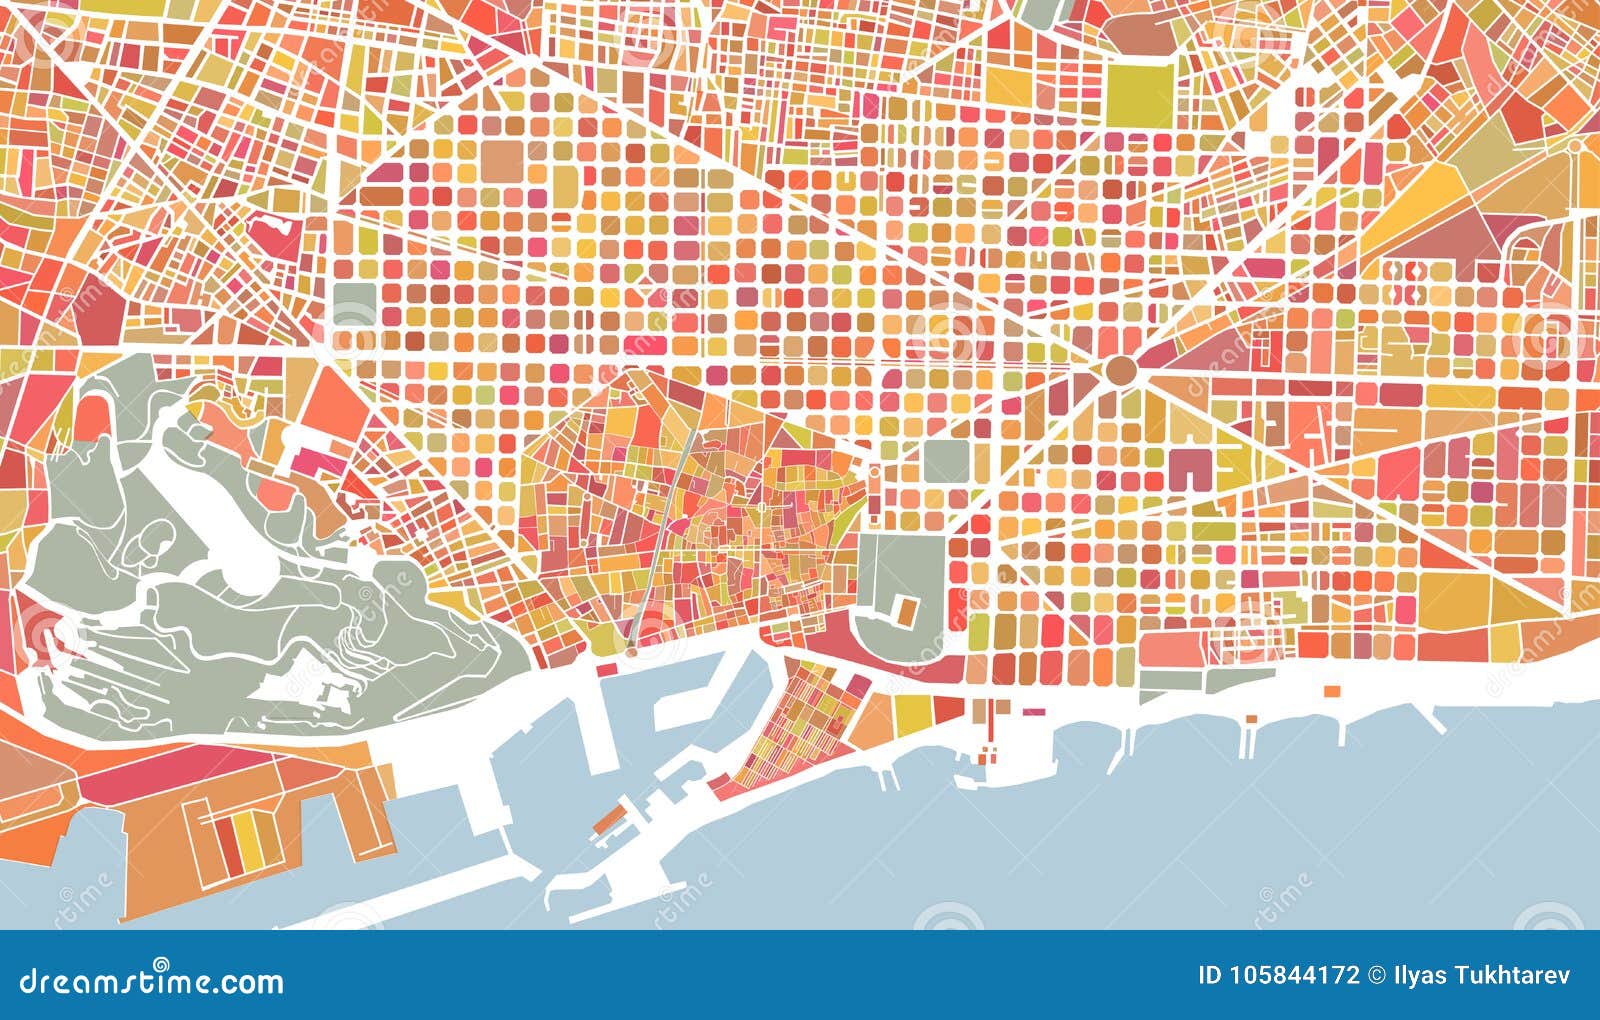 torre Solicitante Elaborar Mapa De La Ciudad De Barcelona, España Stock de ilustración - Ilustración  de sencillo, urbano: 105844172